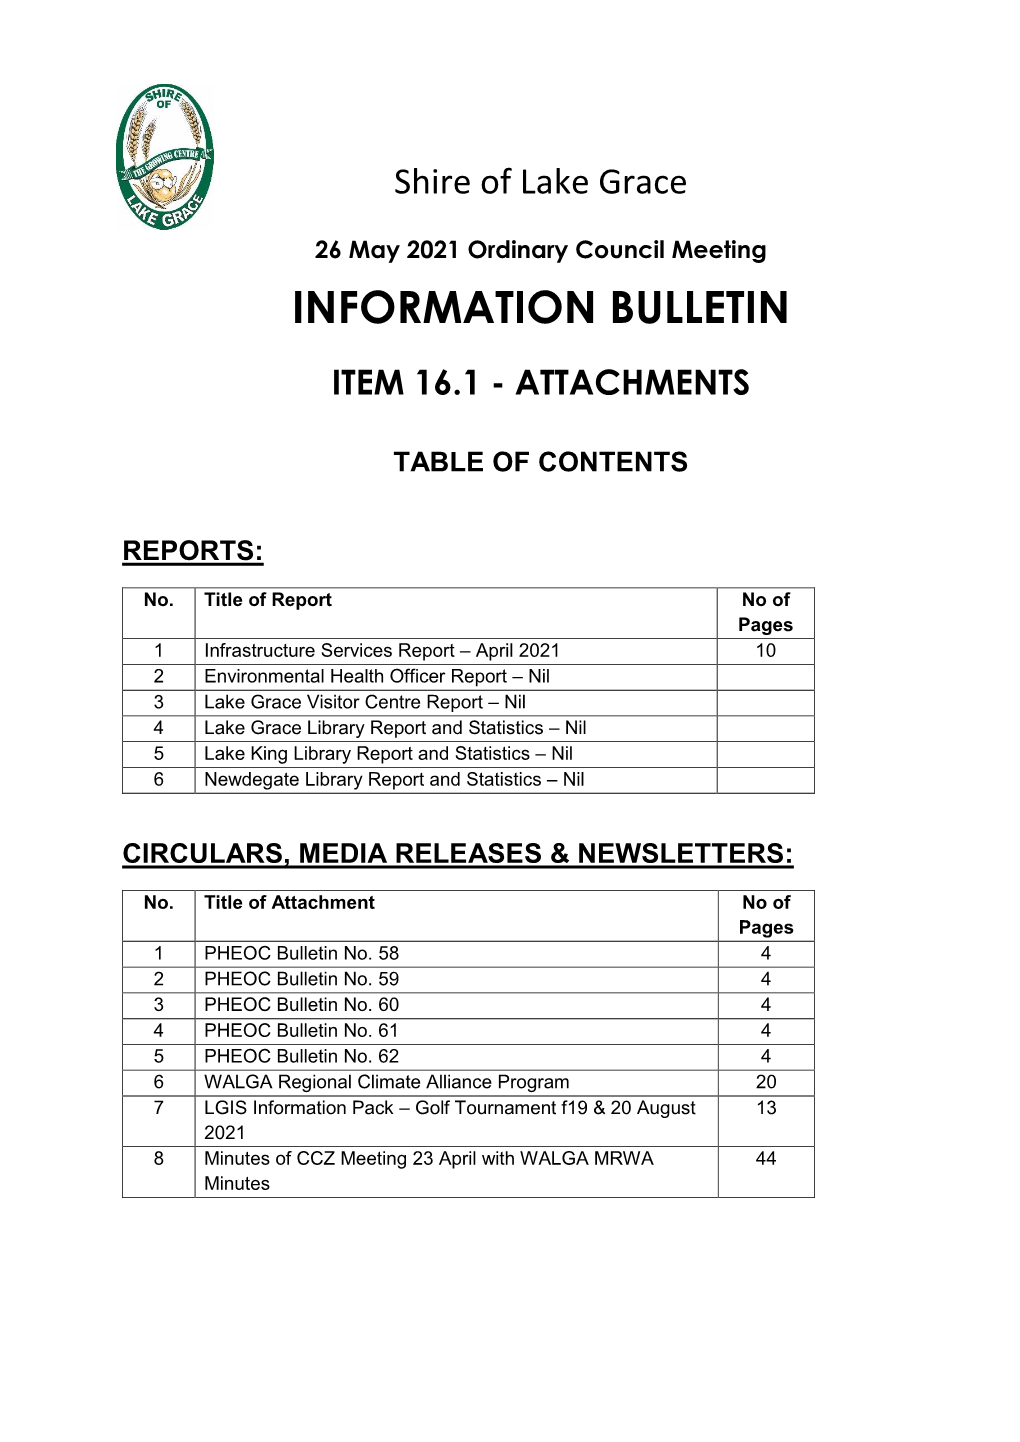 Information Bulletin 26 May 2021